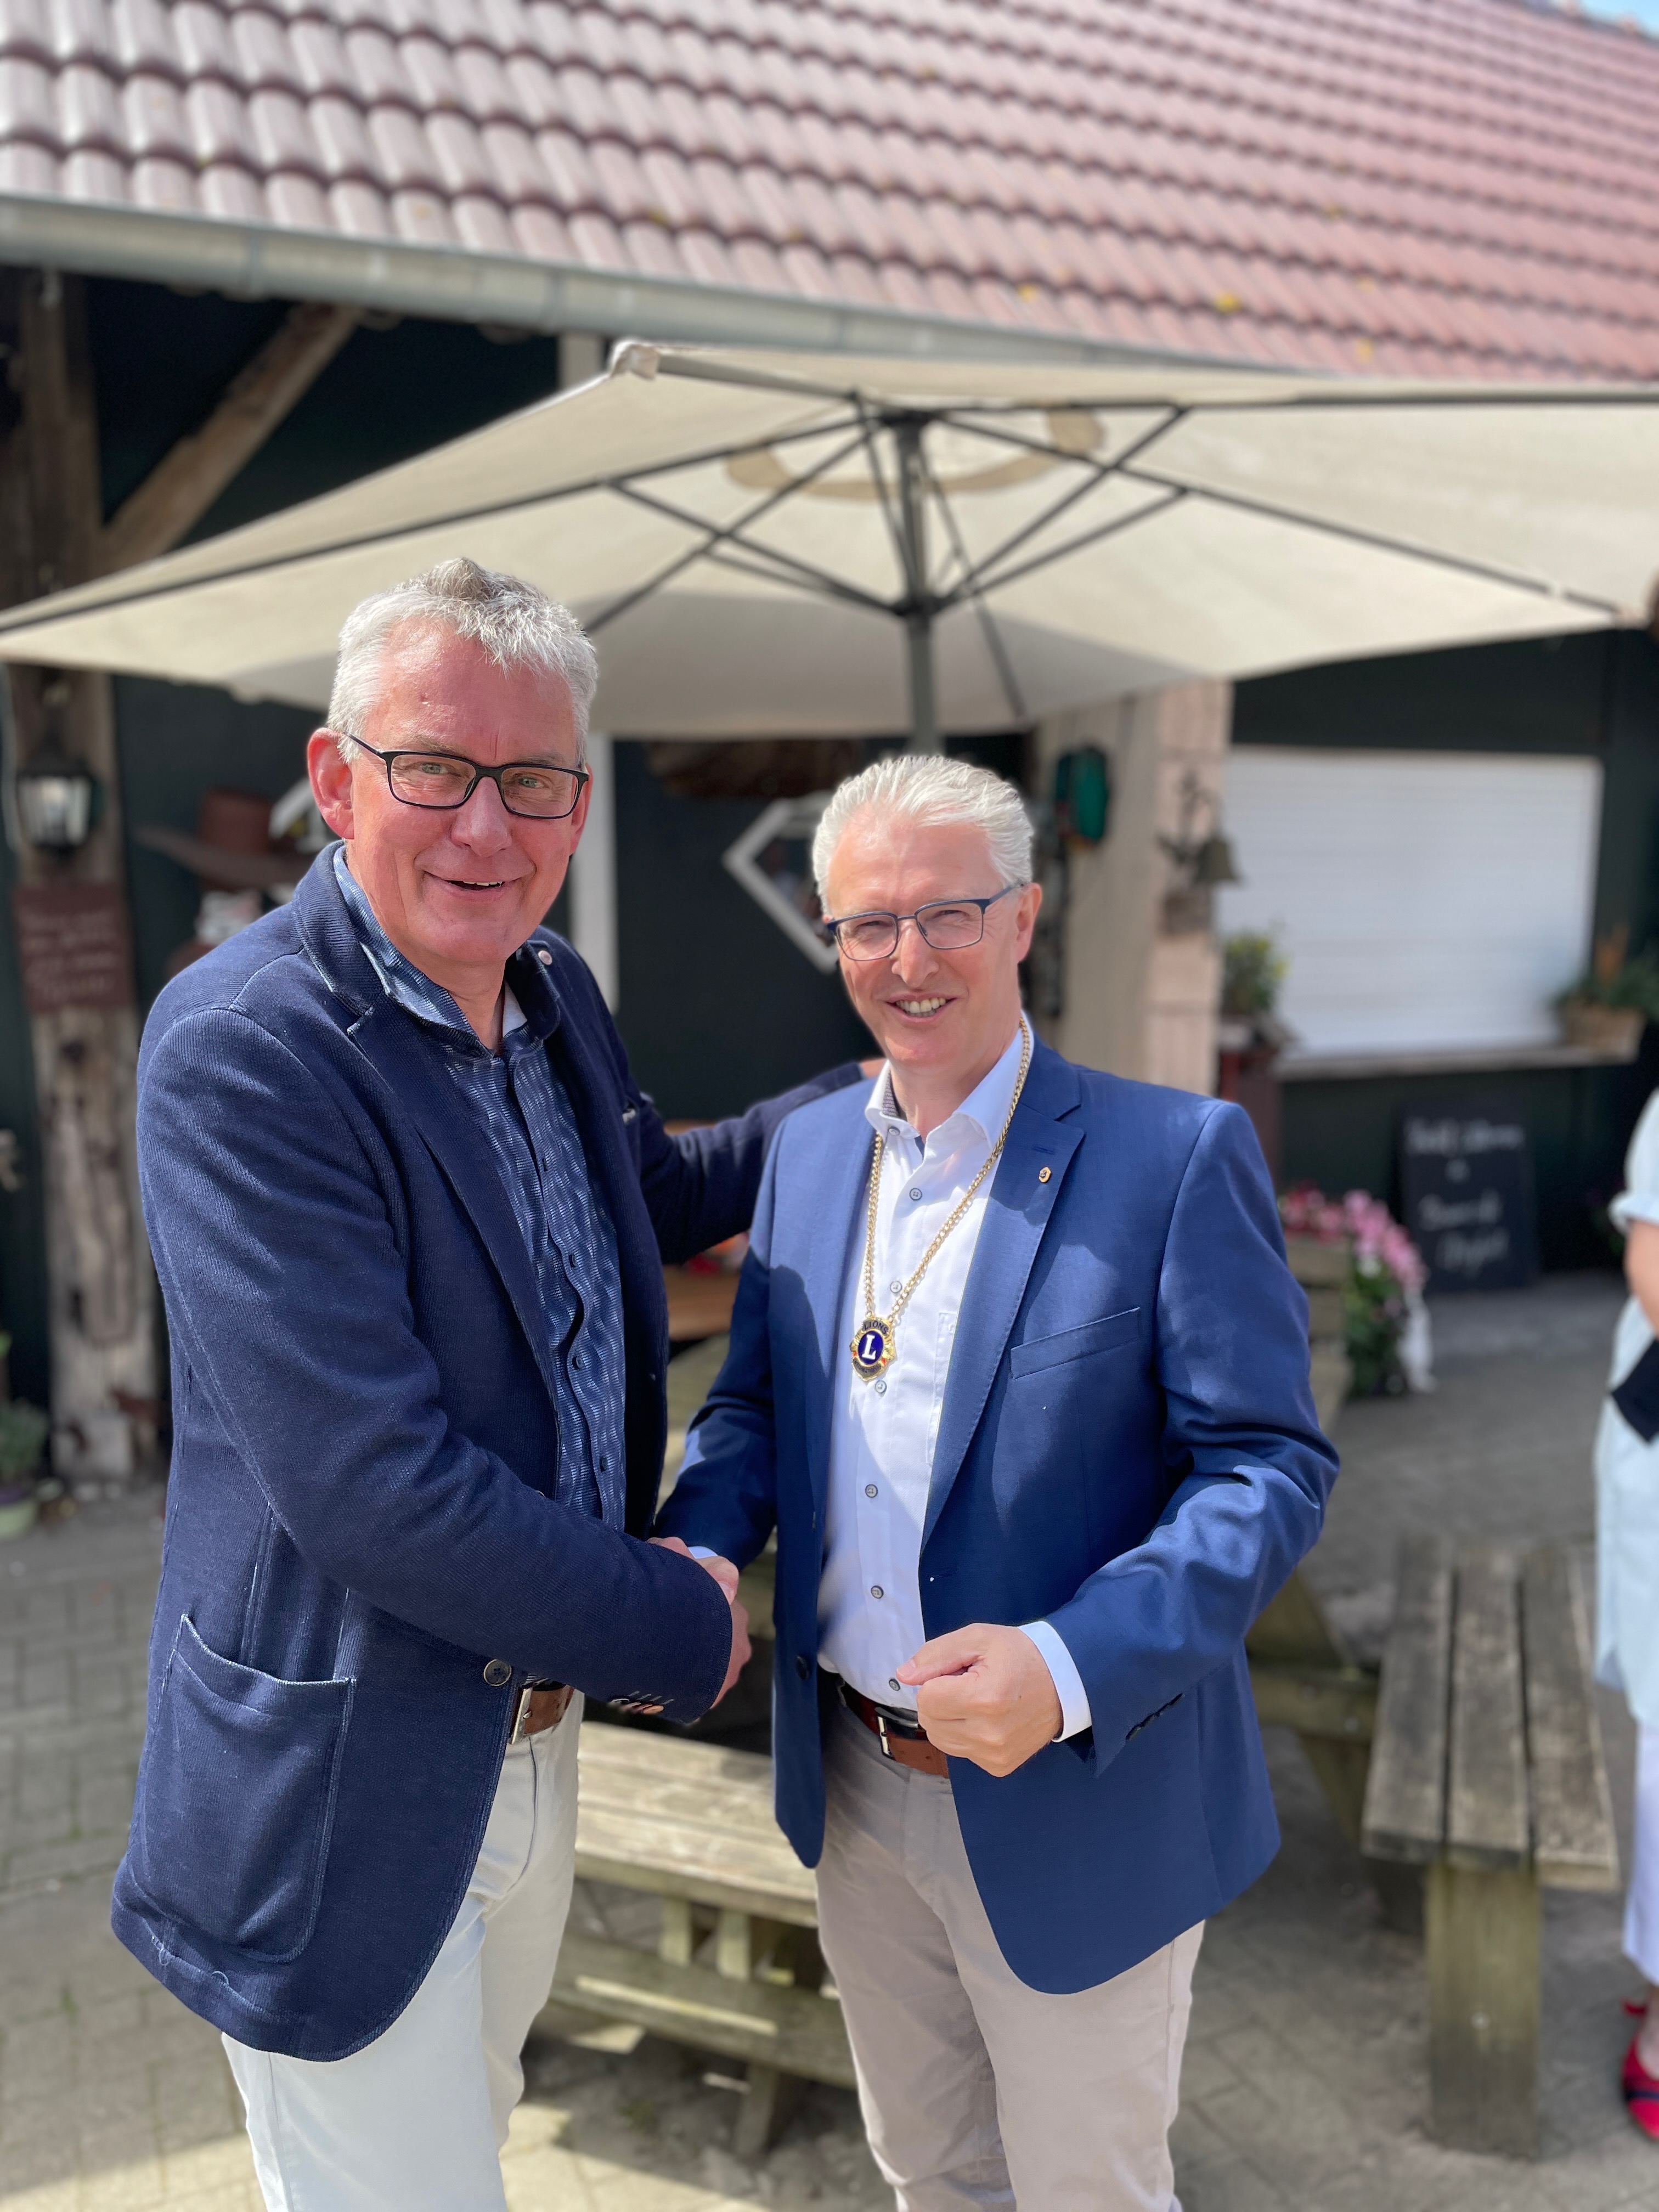 Past-Präsident Klaus-Ludwig Steverding gratuliert dem neuen Präsidenten Karl-Heinz Bollmann